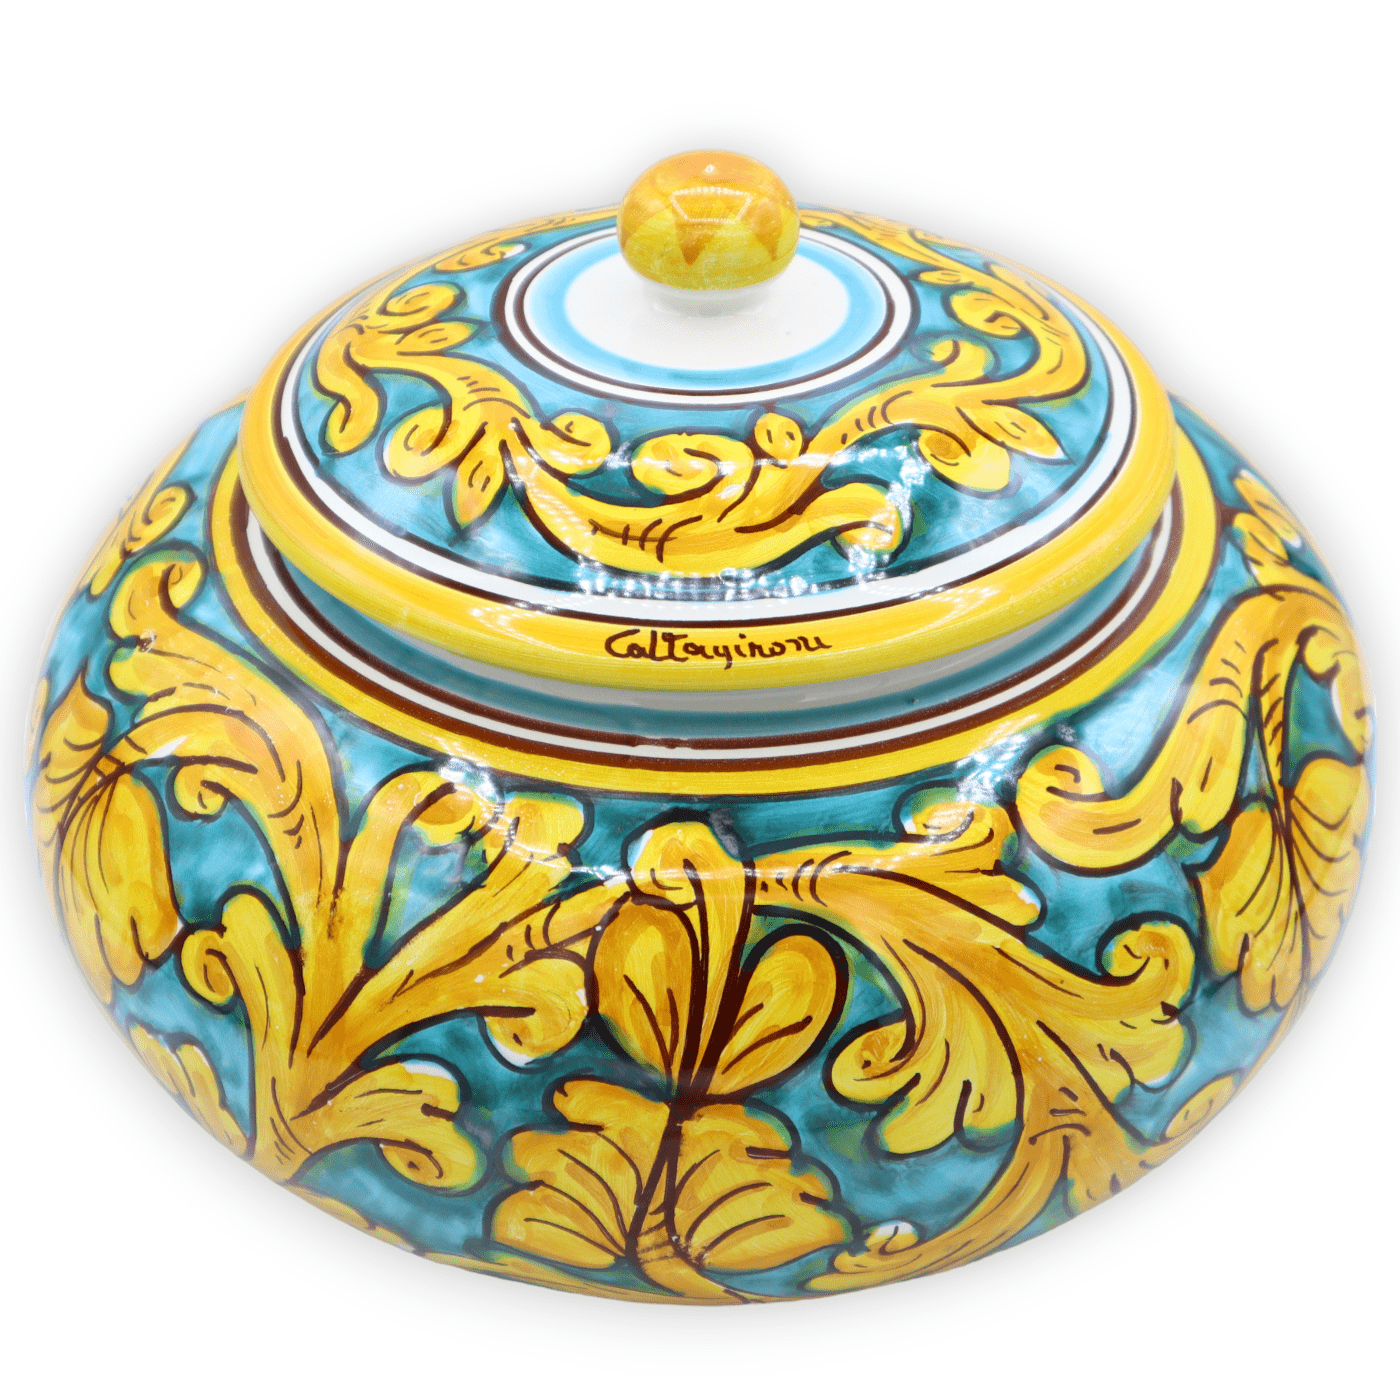 Biscottiera in ceramica di Caltagirone, decoro barocco - Ø 25 cm ca. Mod TD